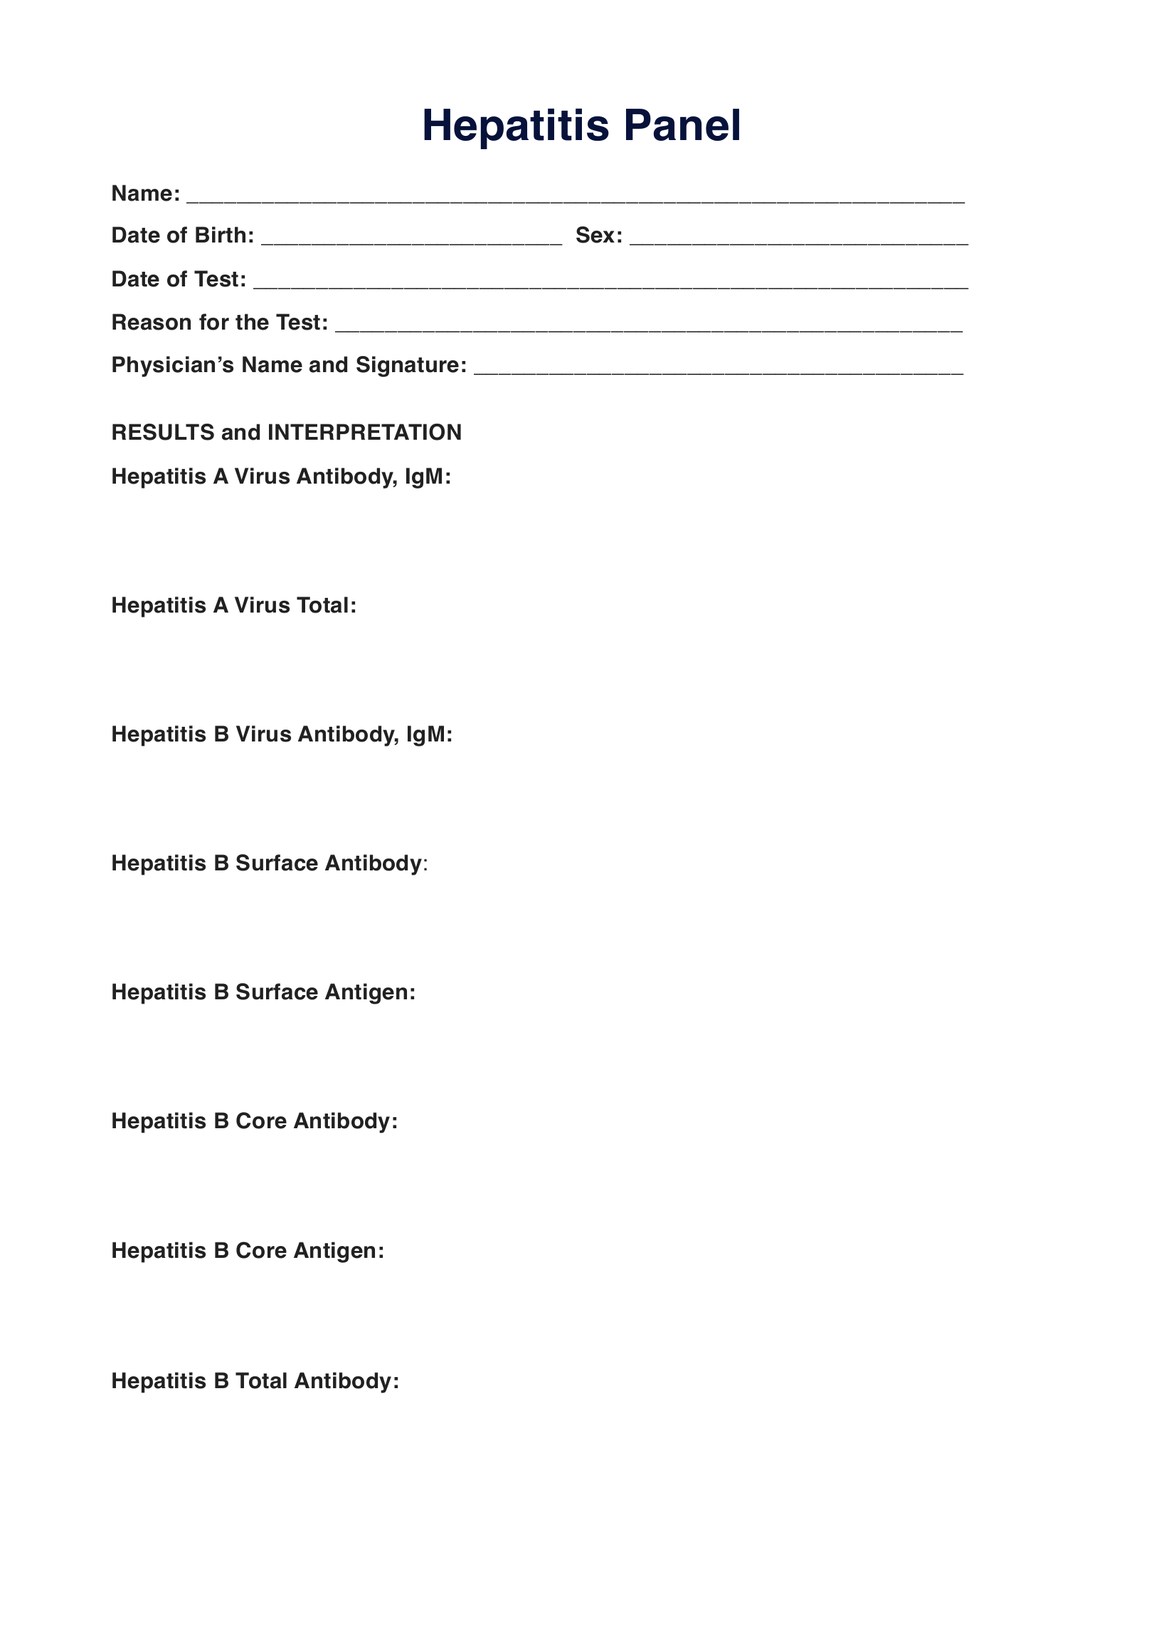 Hepatitis Panel PDF Example